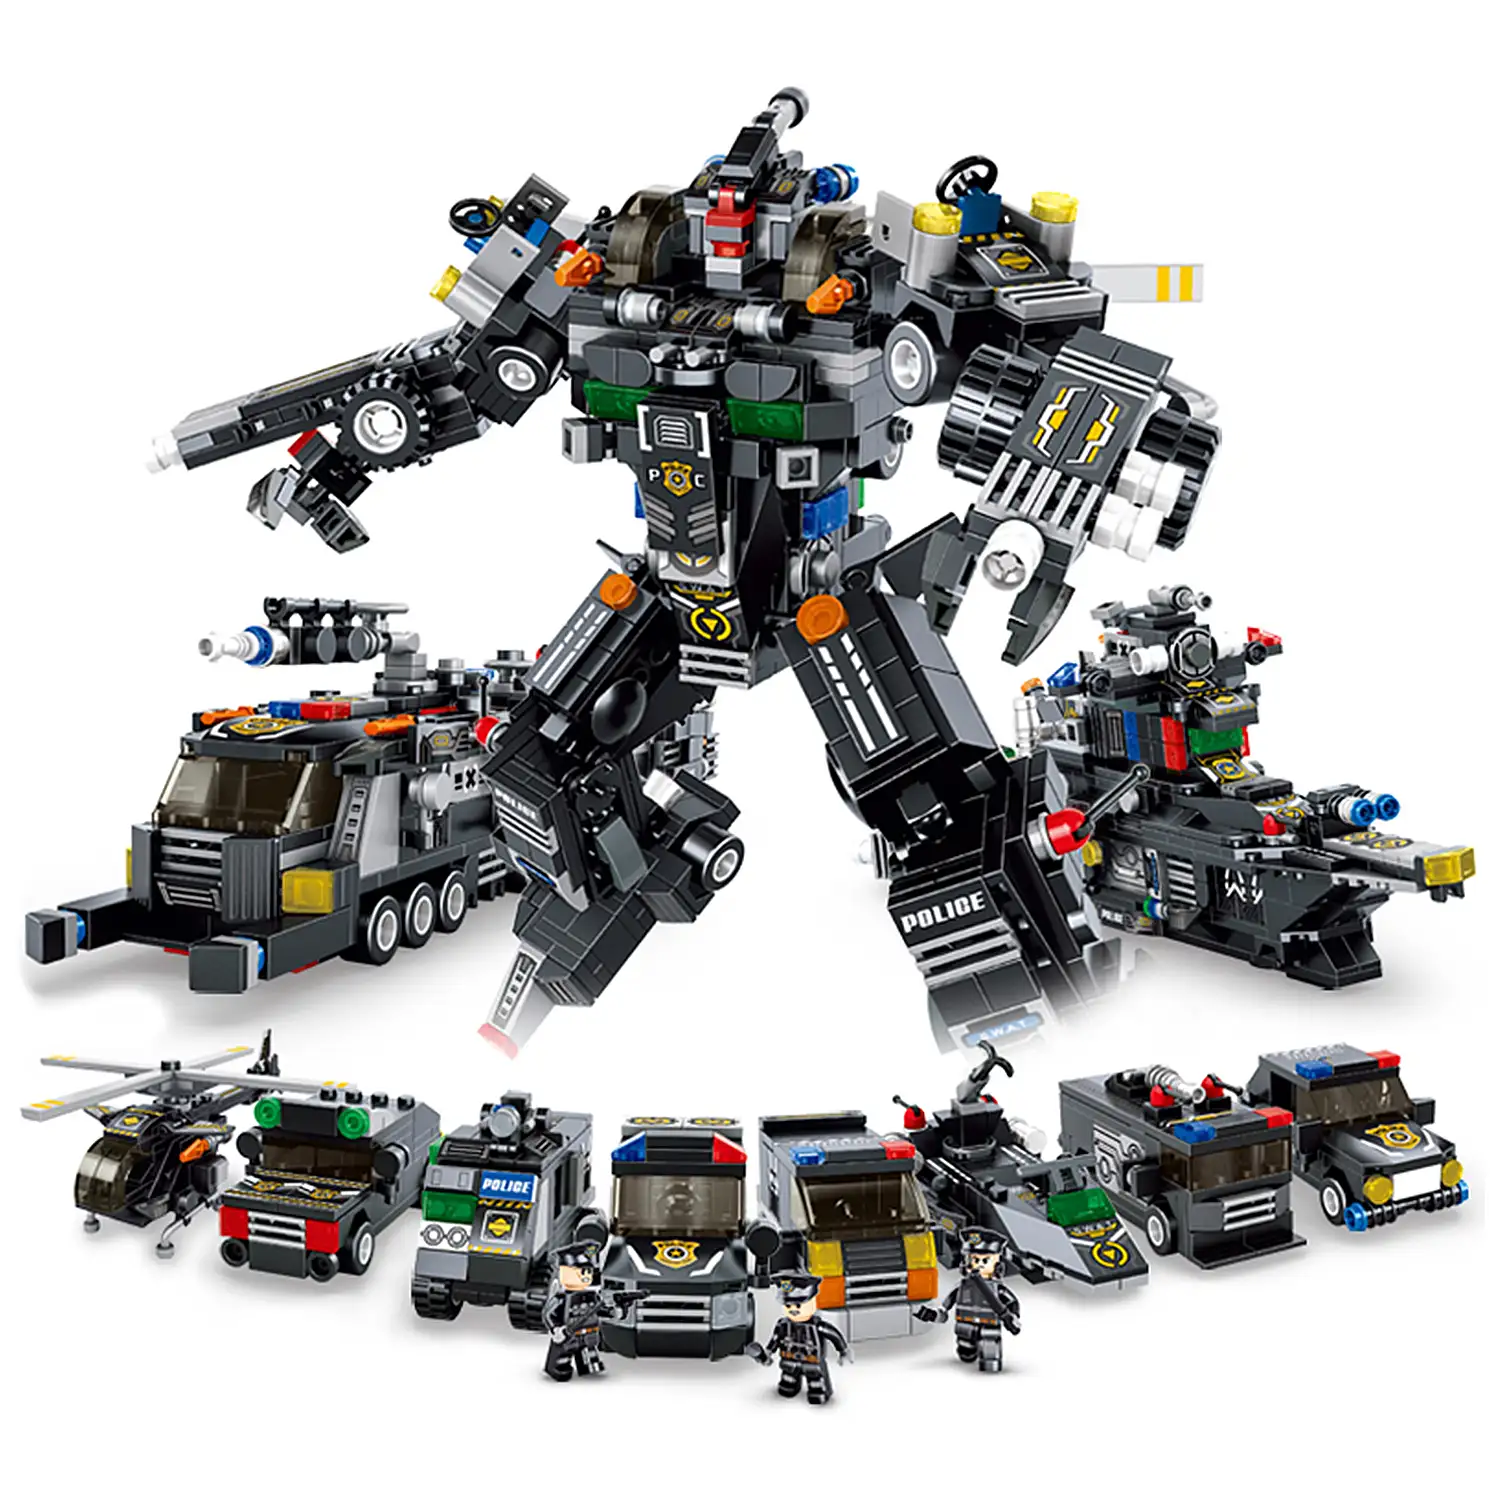 Robot de policía, 832 piezas. Construye 8 modelos individuales con 2 formas cada uno ó 2 vehículos medianos.